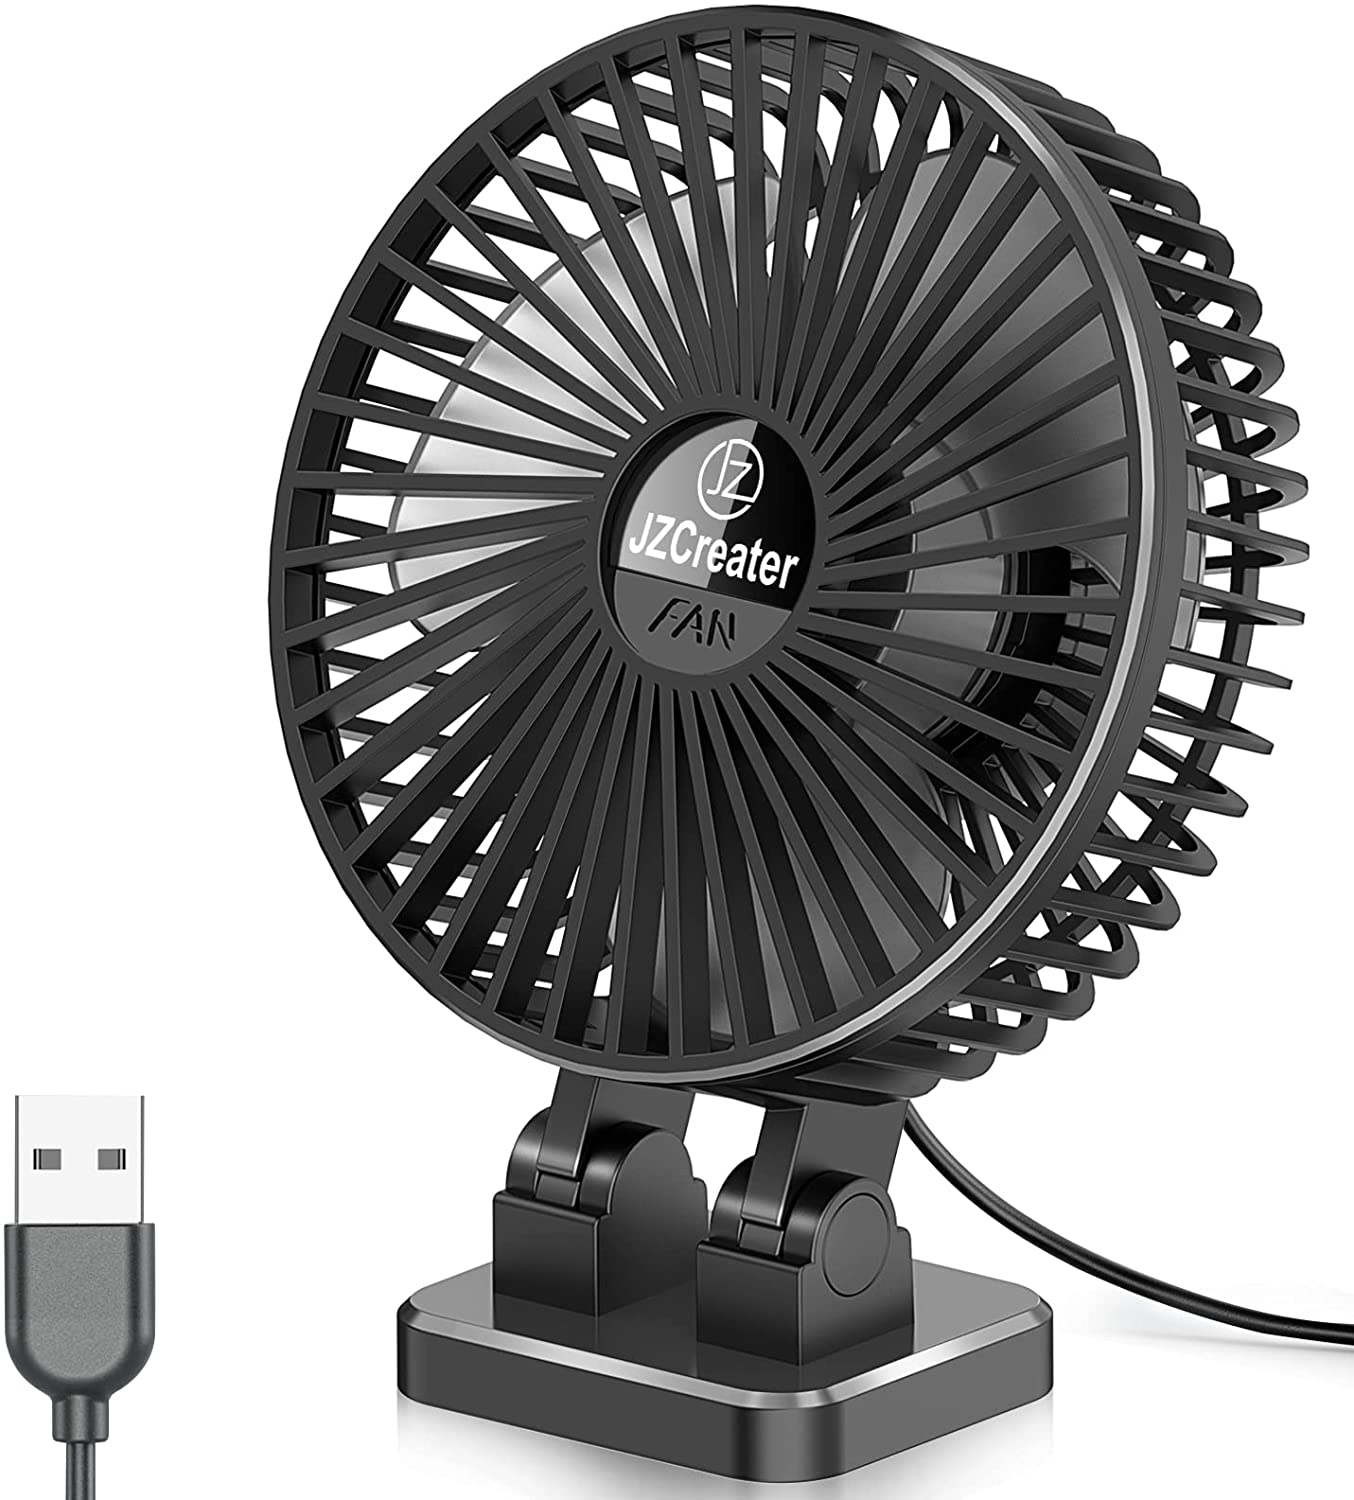 USB Desk Fan, 5INCH Mini Fan, 3 Speeds Adjustable Desktop Table Cooling Fan in Single Button , Rotation Strong Wind, Quiet Personal Mini Fan for Home Desktop Office Travel, Black Blue